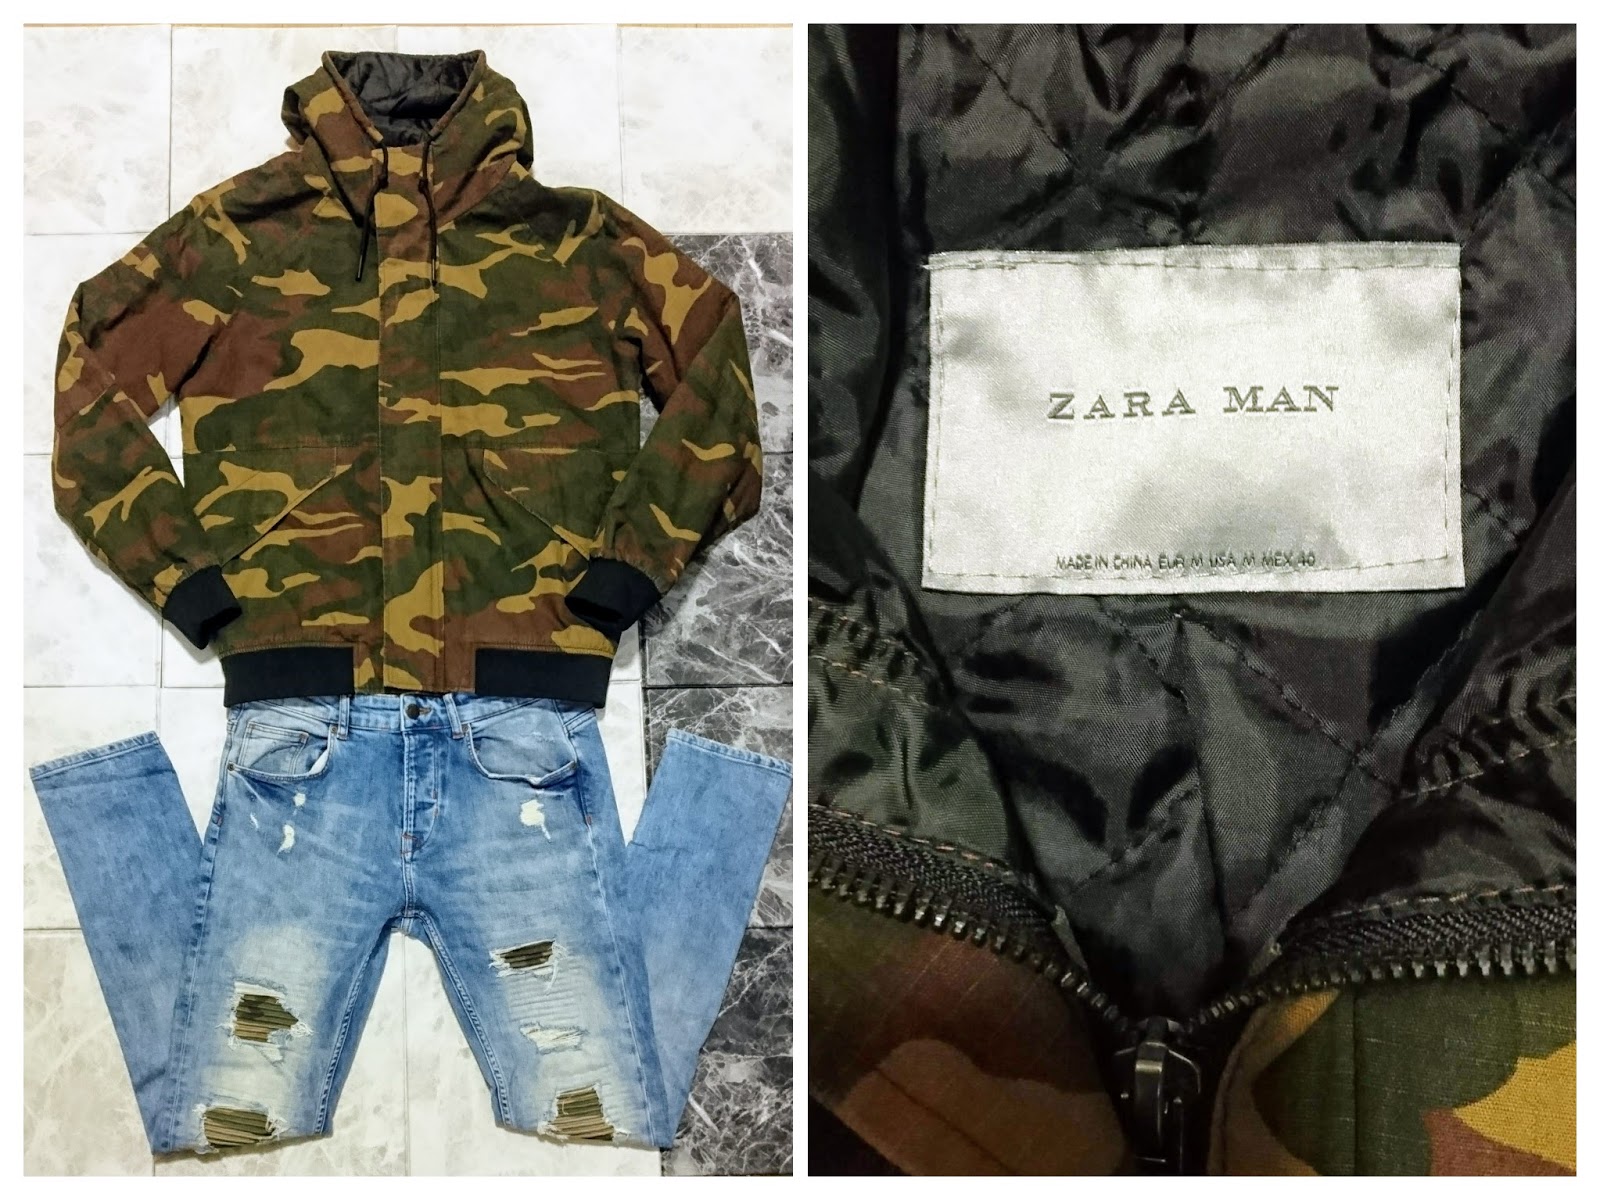 Zara ザラ 迷彩柄のジャケットで 冬コーデ を作る Zara Man マウンテンパーカー 着こなし方を考える